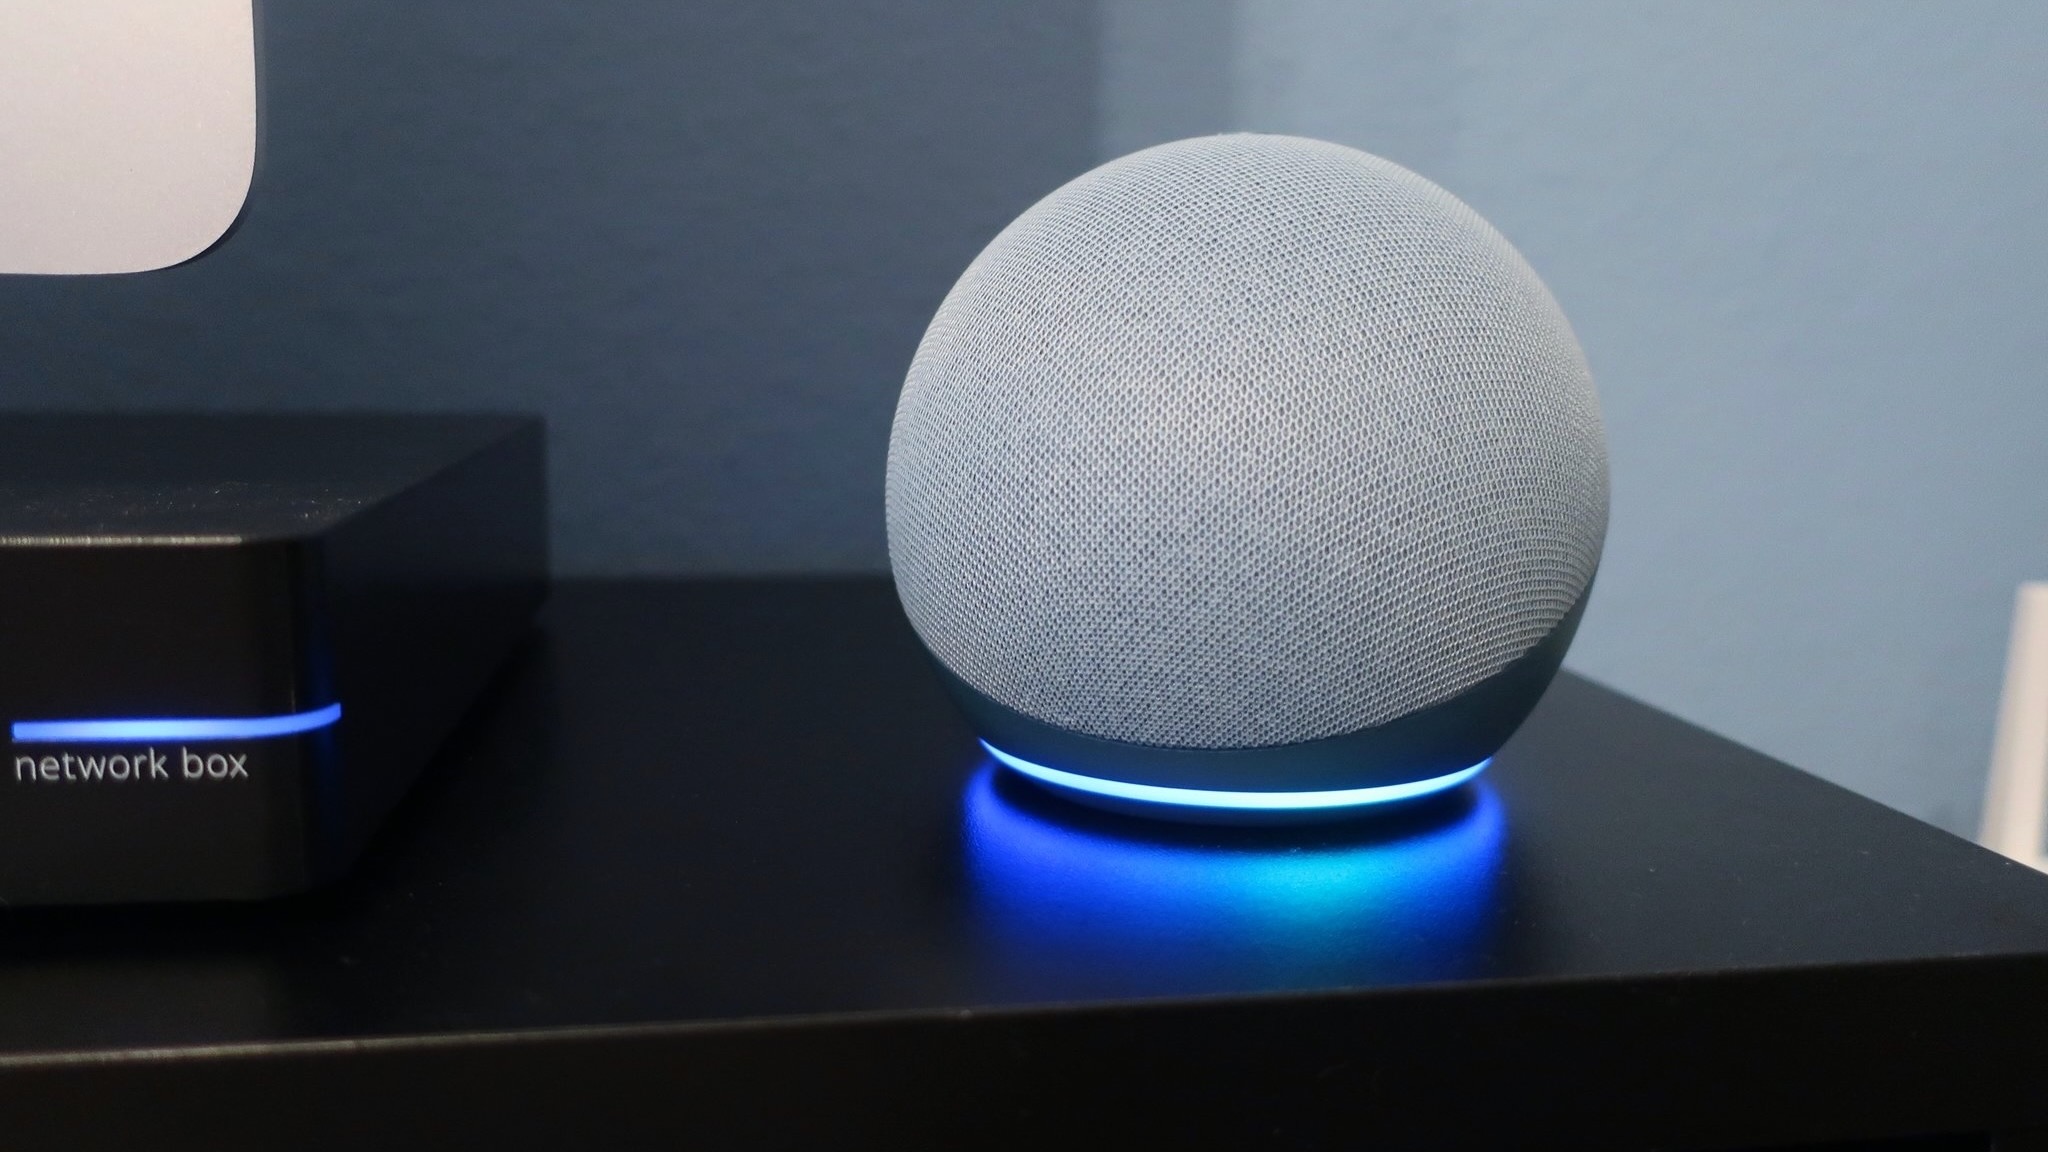 床头柜上的 Amazon Echo Dot（第 4 代）